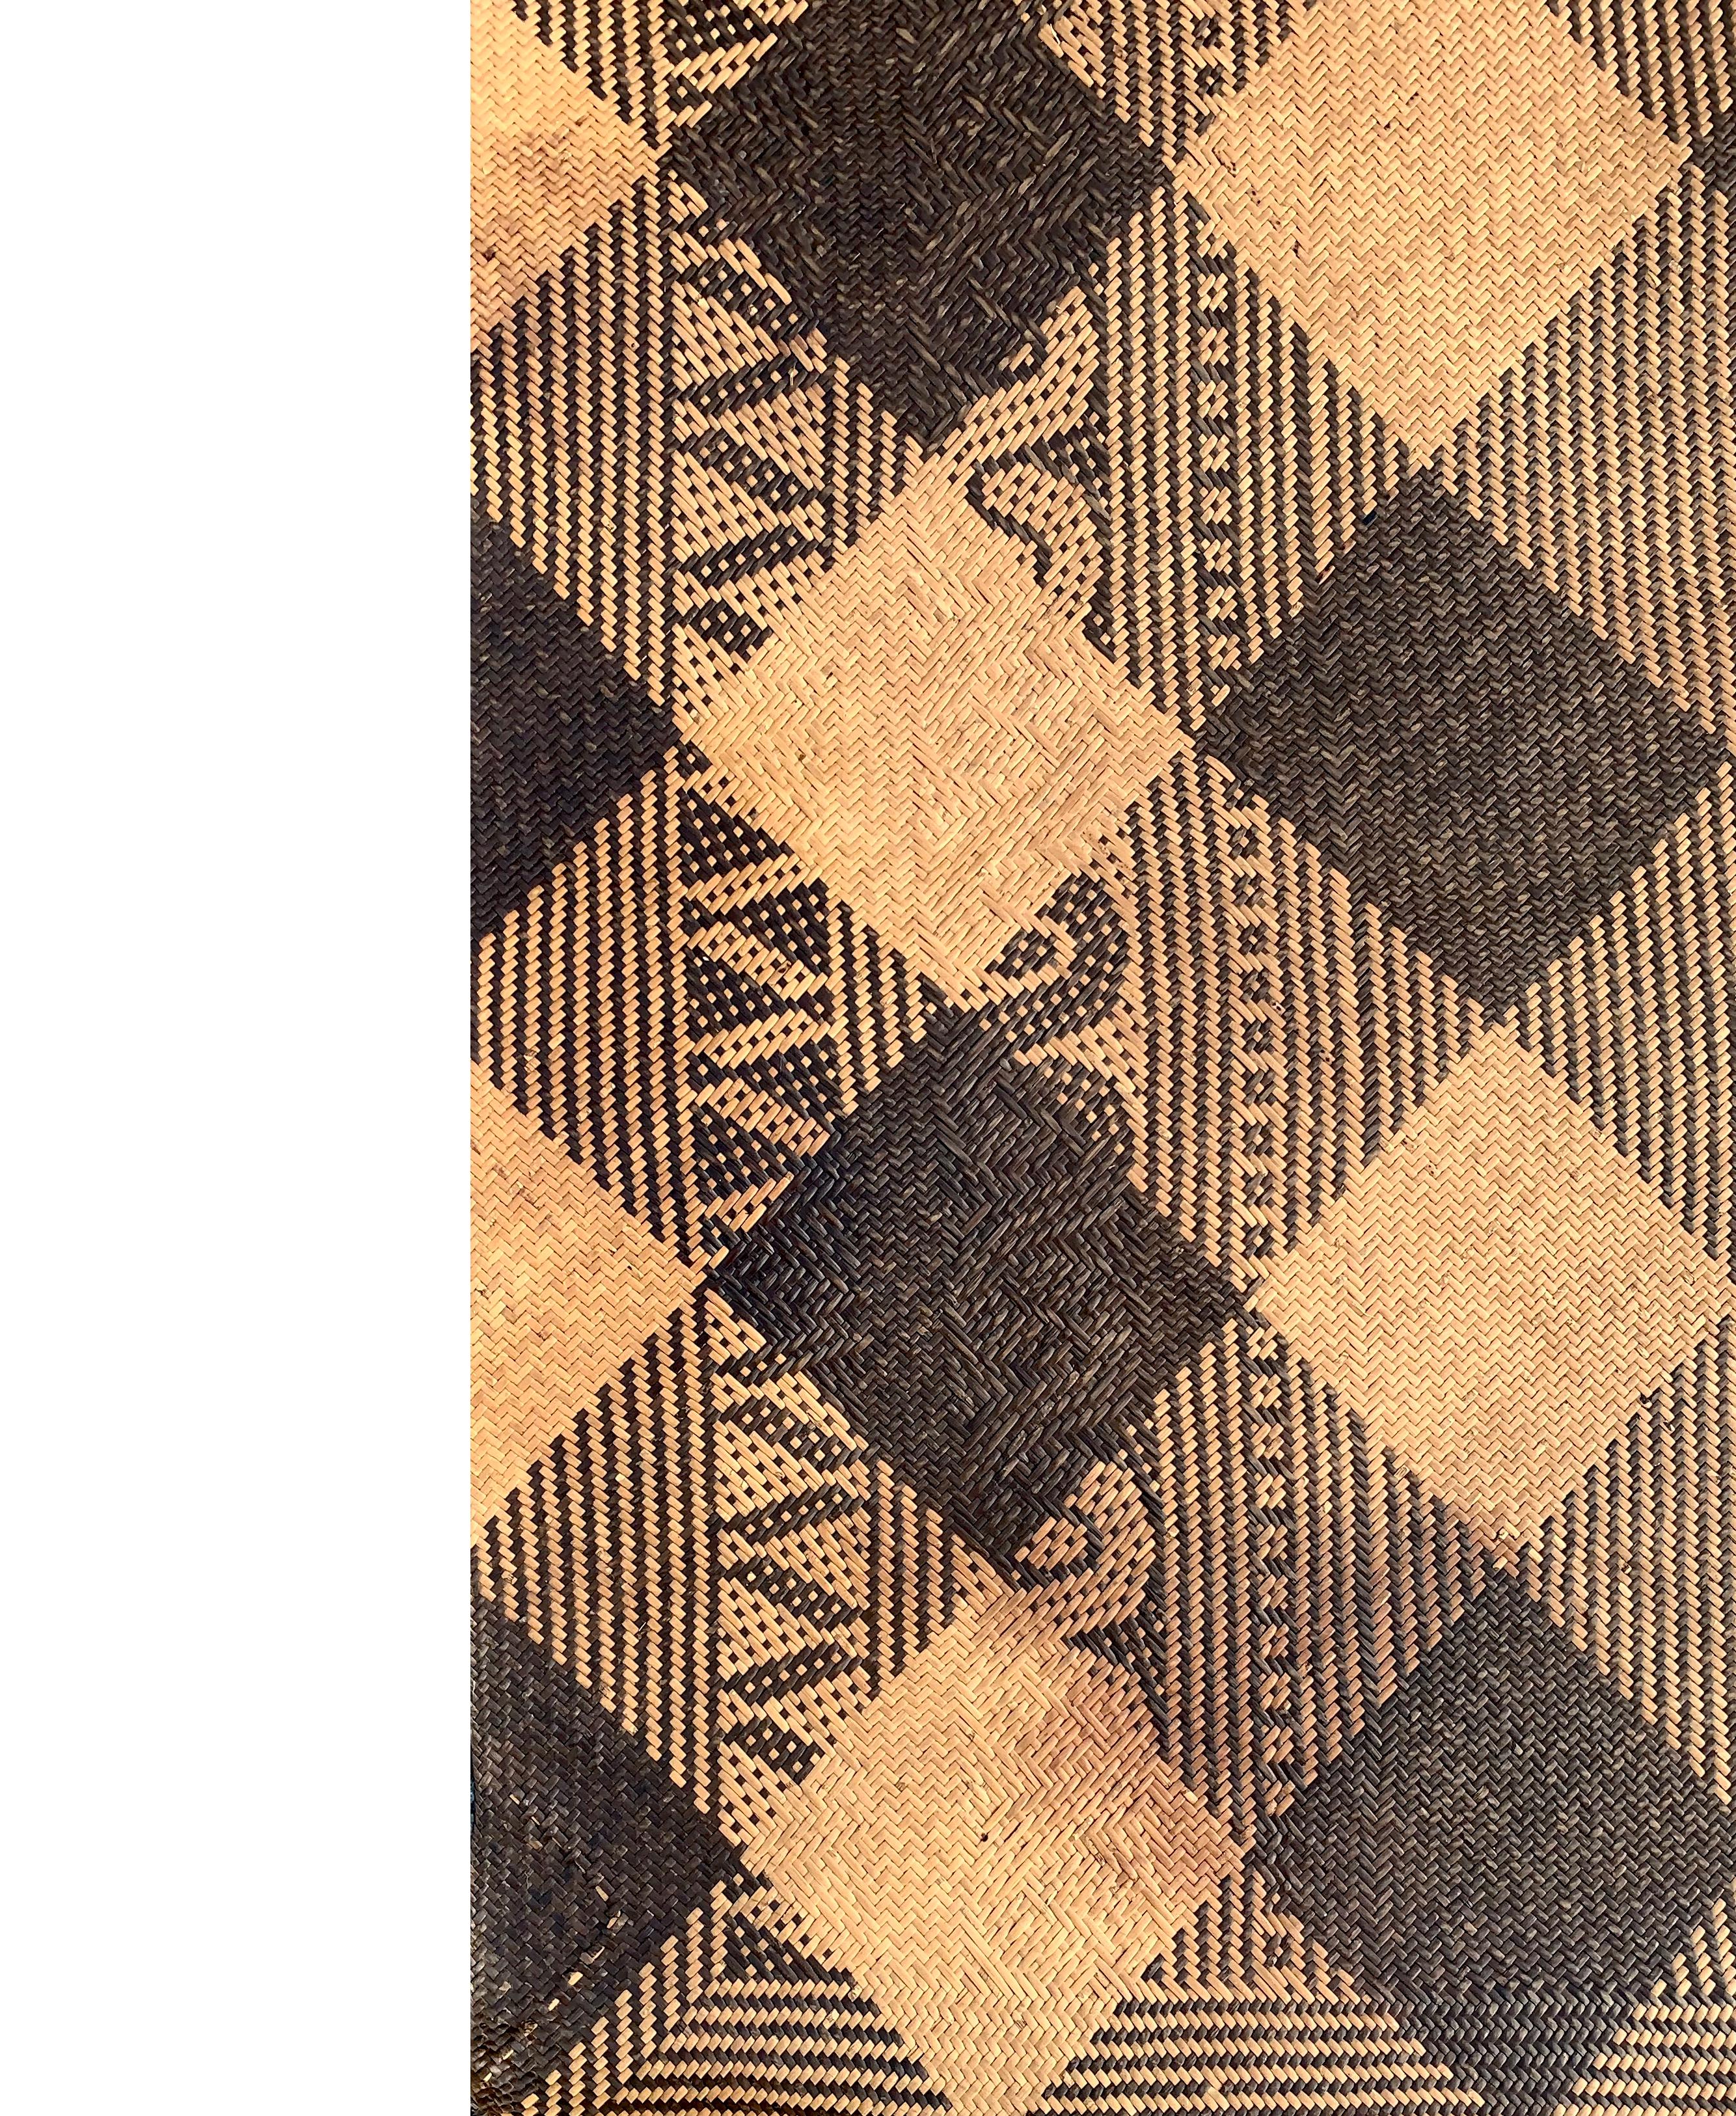 Ce tapis de sol occupait autrefois une longue maison tribale de la tribu Dayak de Bornéo. Il est fabriqué à partir de fibres de rotin tissées, teintes et de couleur naturelle, et présente des motifs tribaux le long de son bord. 

Dimension :